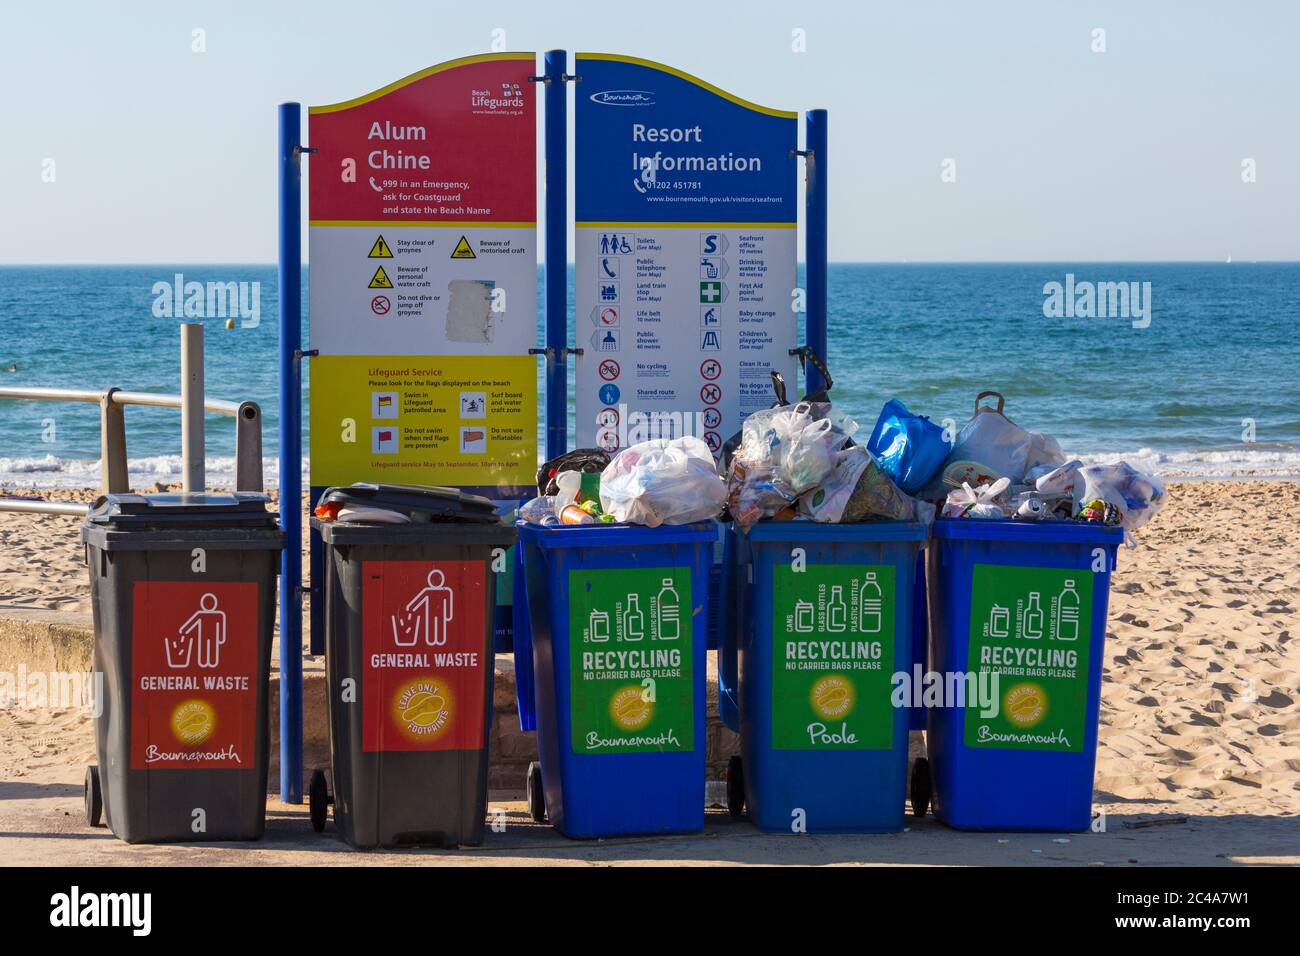 Les ordures laissées sur le plus chaud jour de l'année pendant la vague de chaleur à la plage de Bournemouth, Dorset Royaume-Uni en juin - déchets de litière Banque D'Images